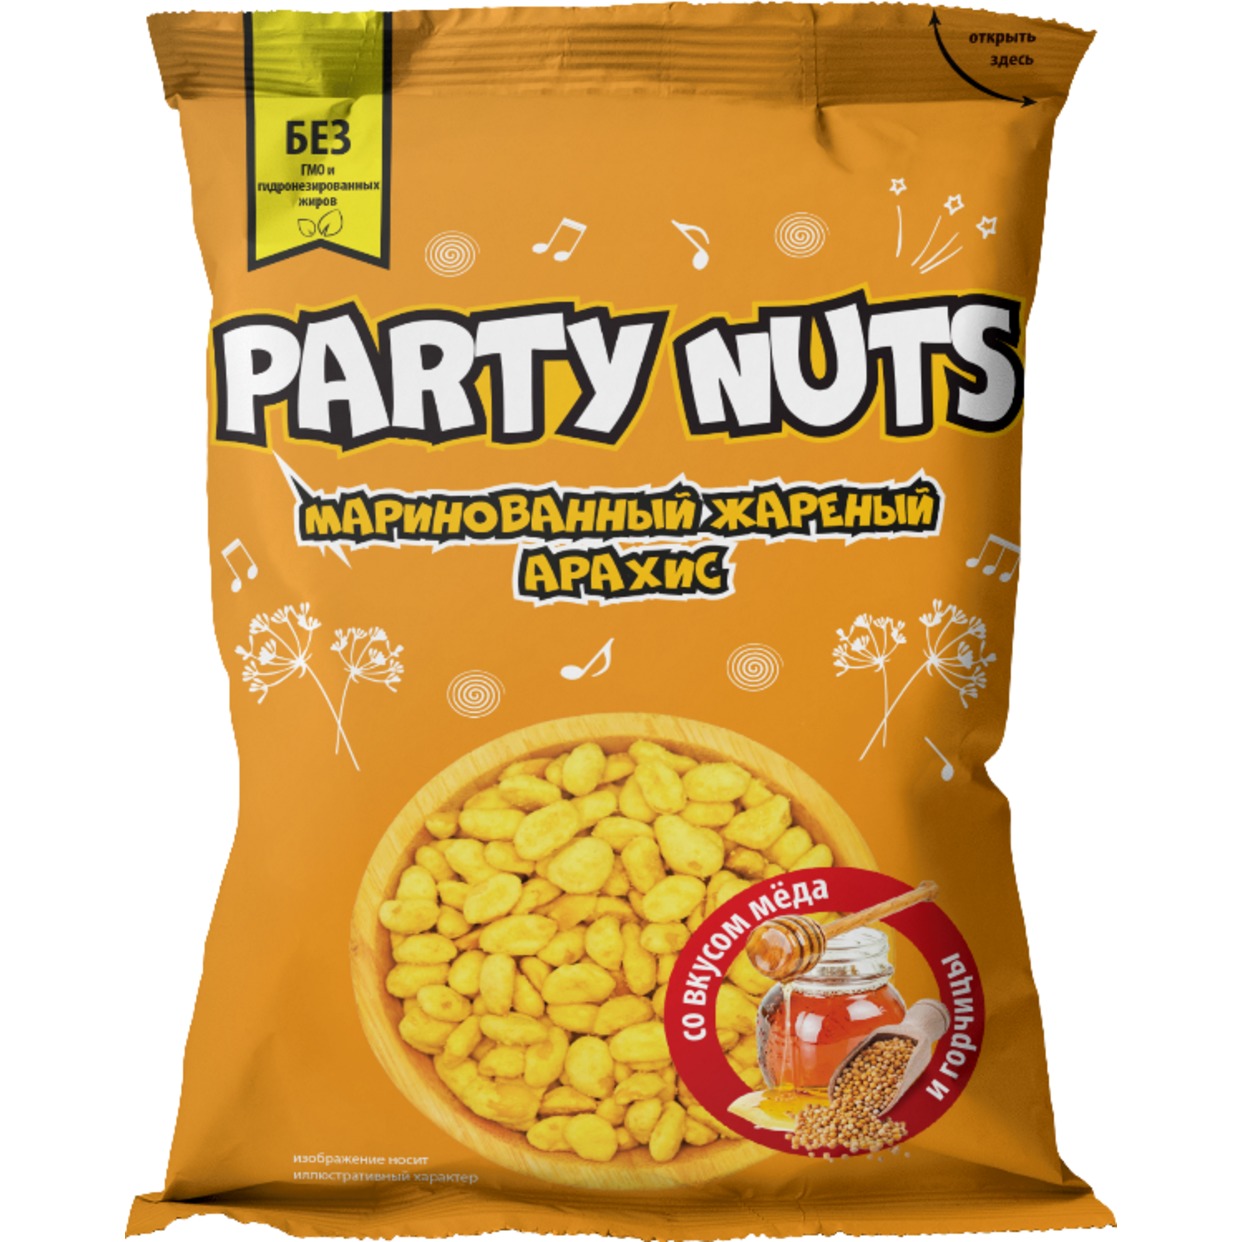 Маринованный жареный арахис со вкусом меда и горчицы "PARTY NUTS" 70 гр